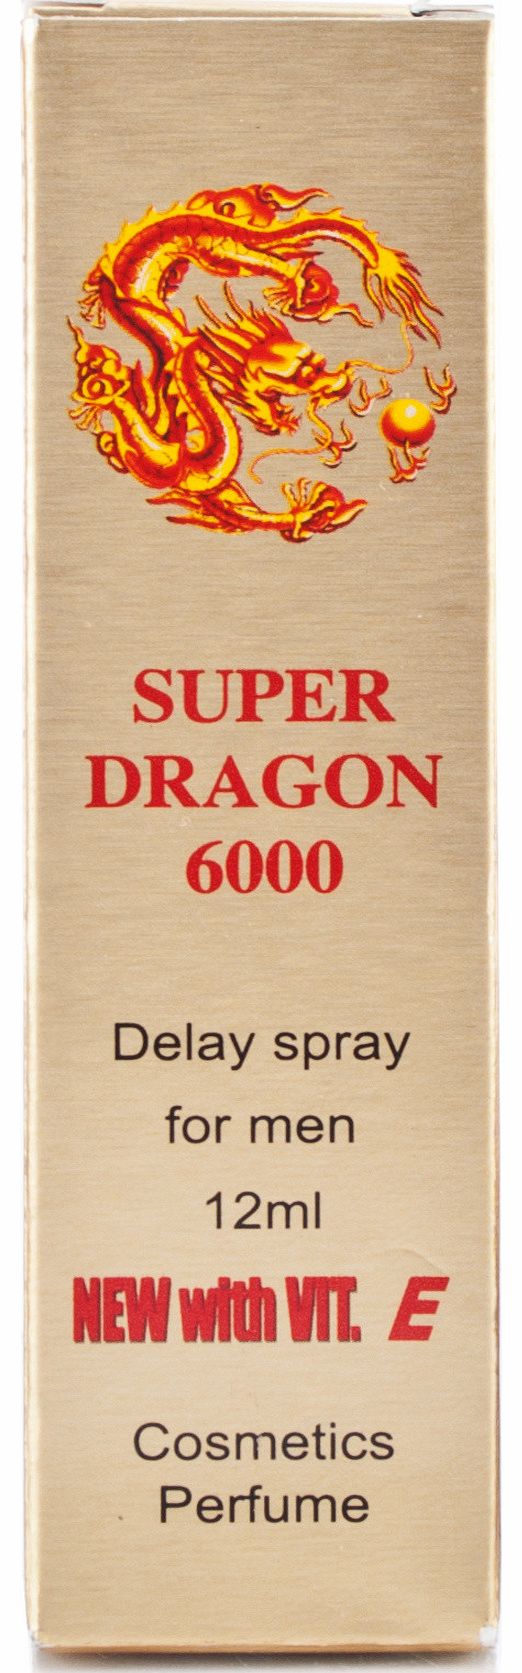 Super Dragon 6000 Delay Spray - 12ml